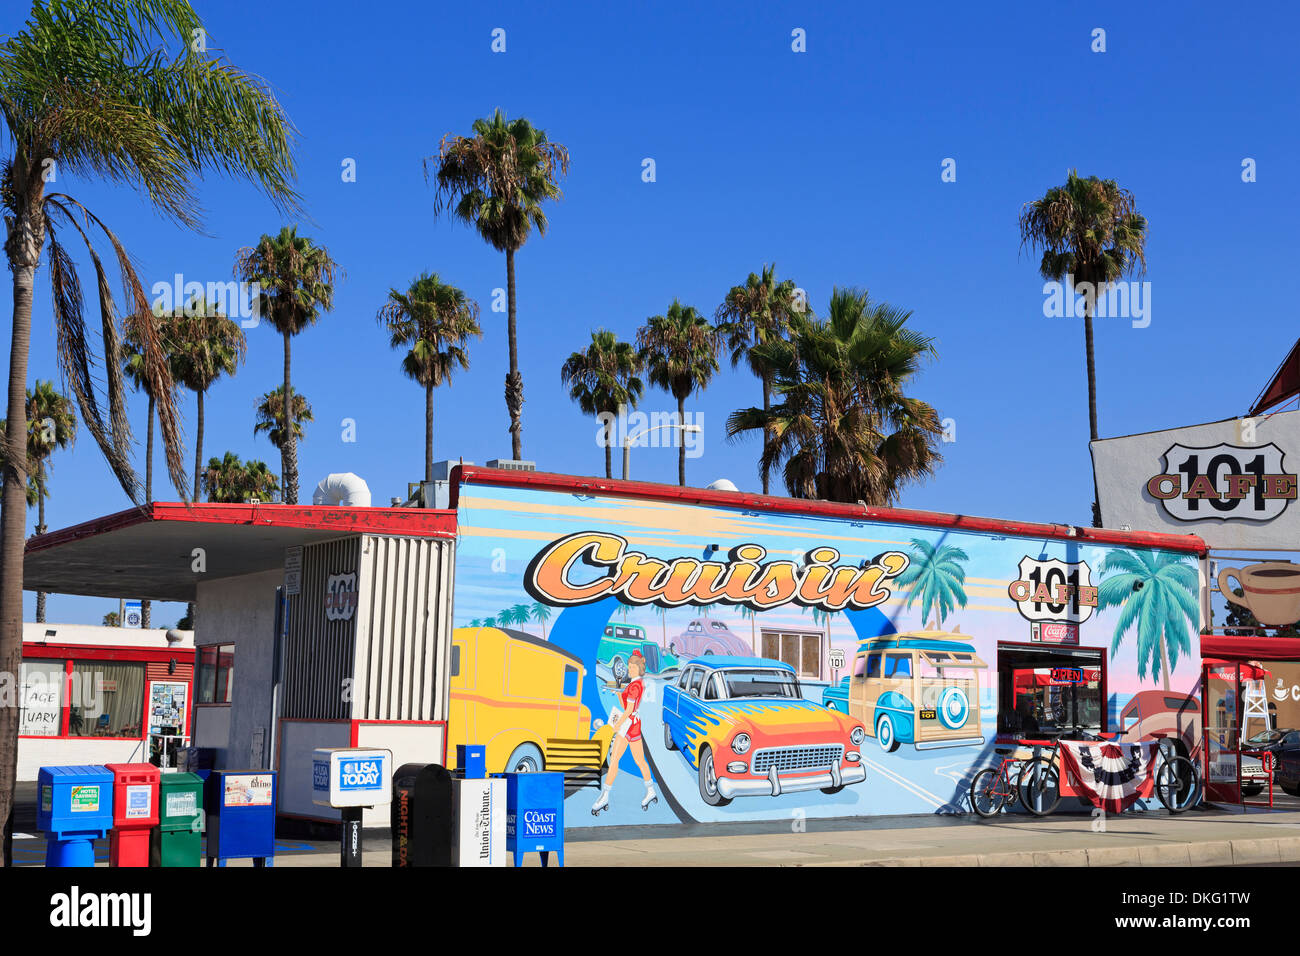 L'autoroute 101 Cafe à Oceanside, en Californie, États-Unis d'Amérique, Amérique du Nord Banque D'Images